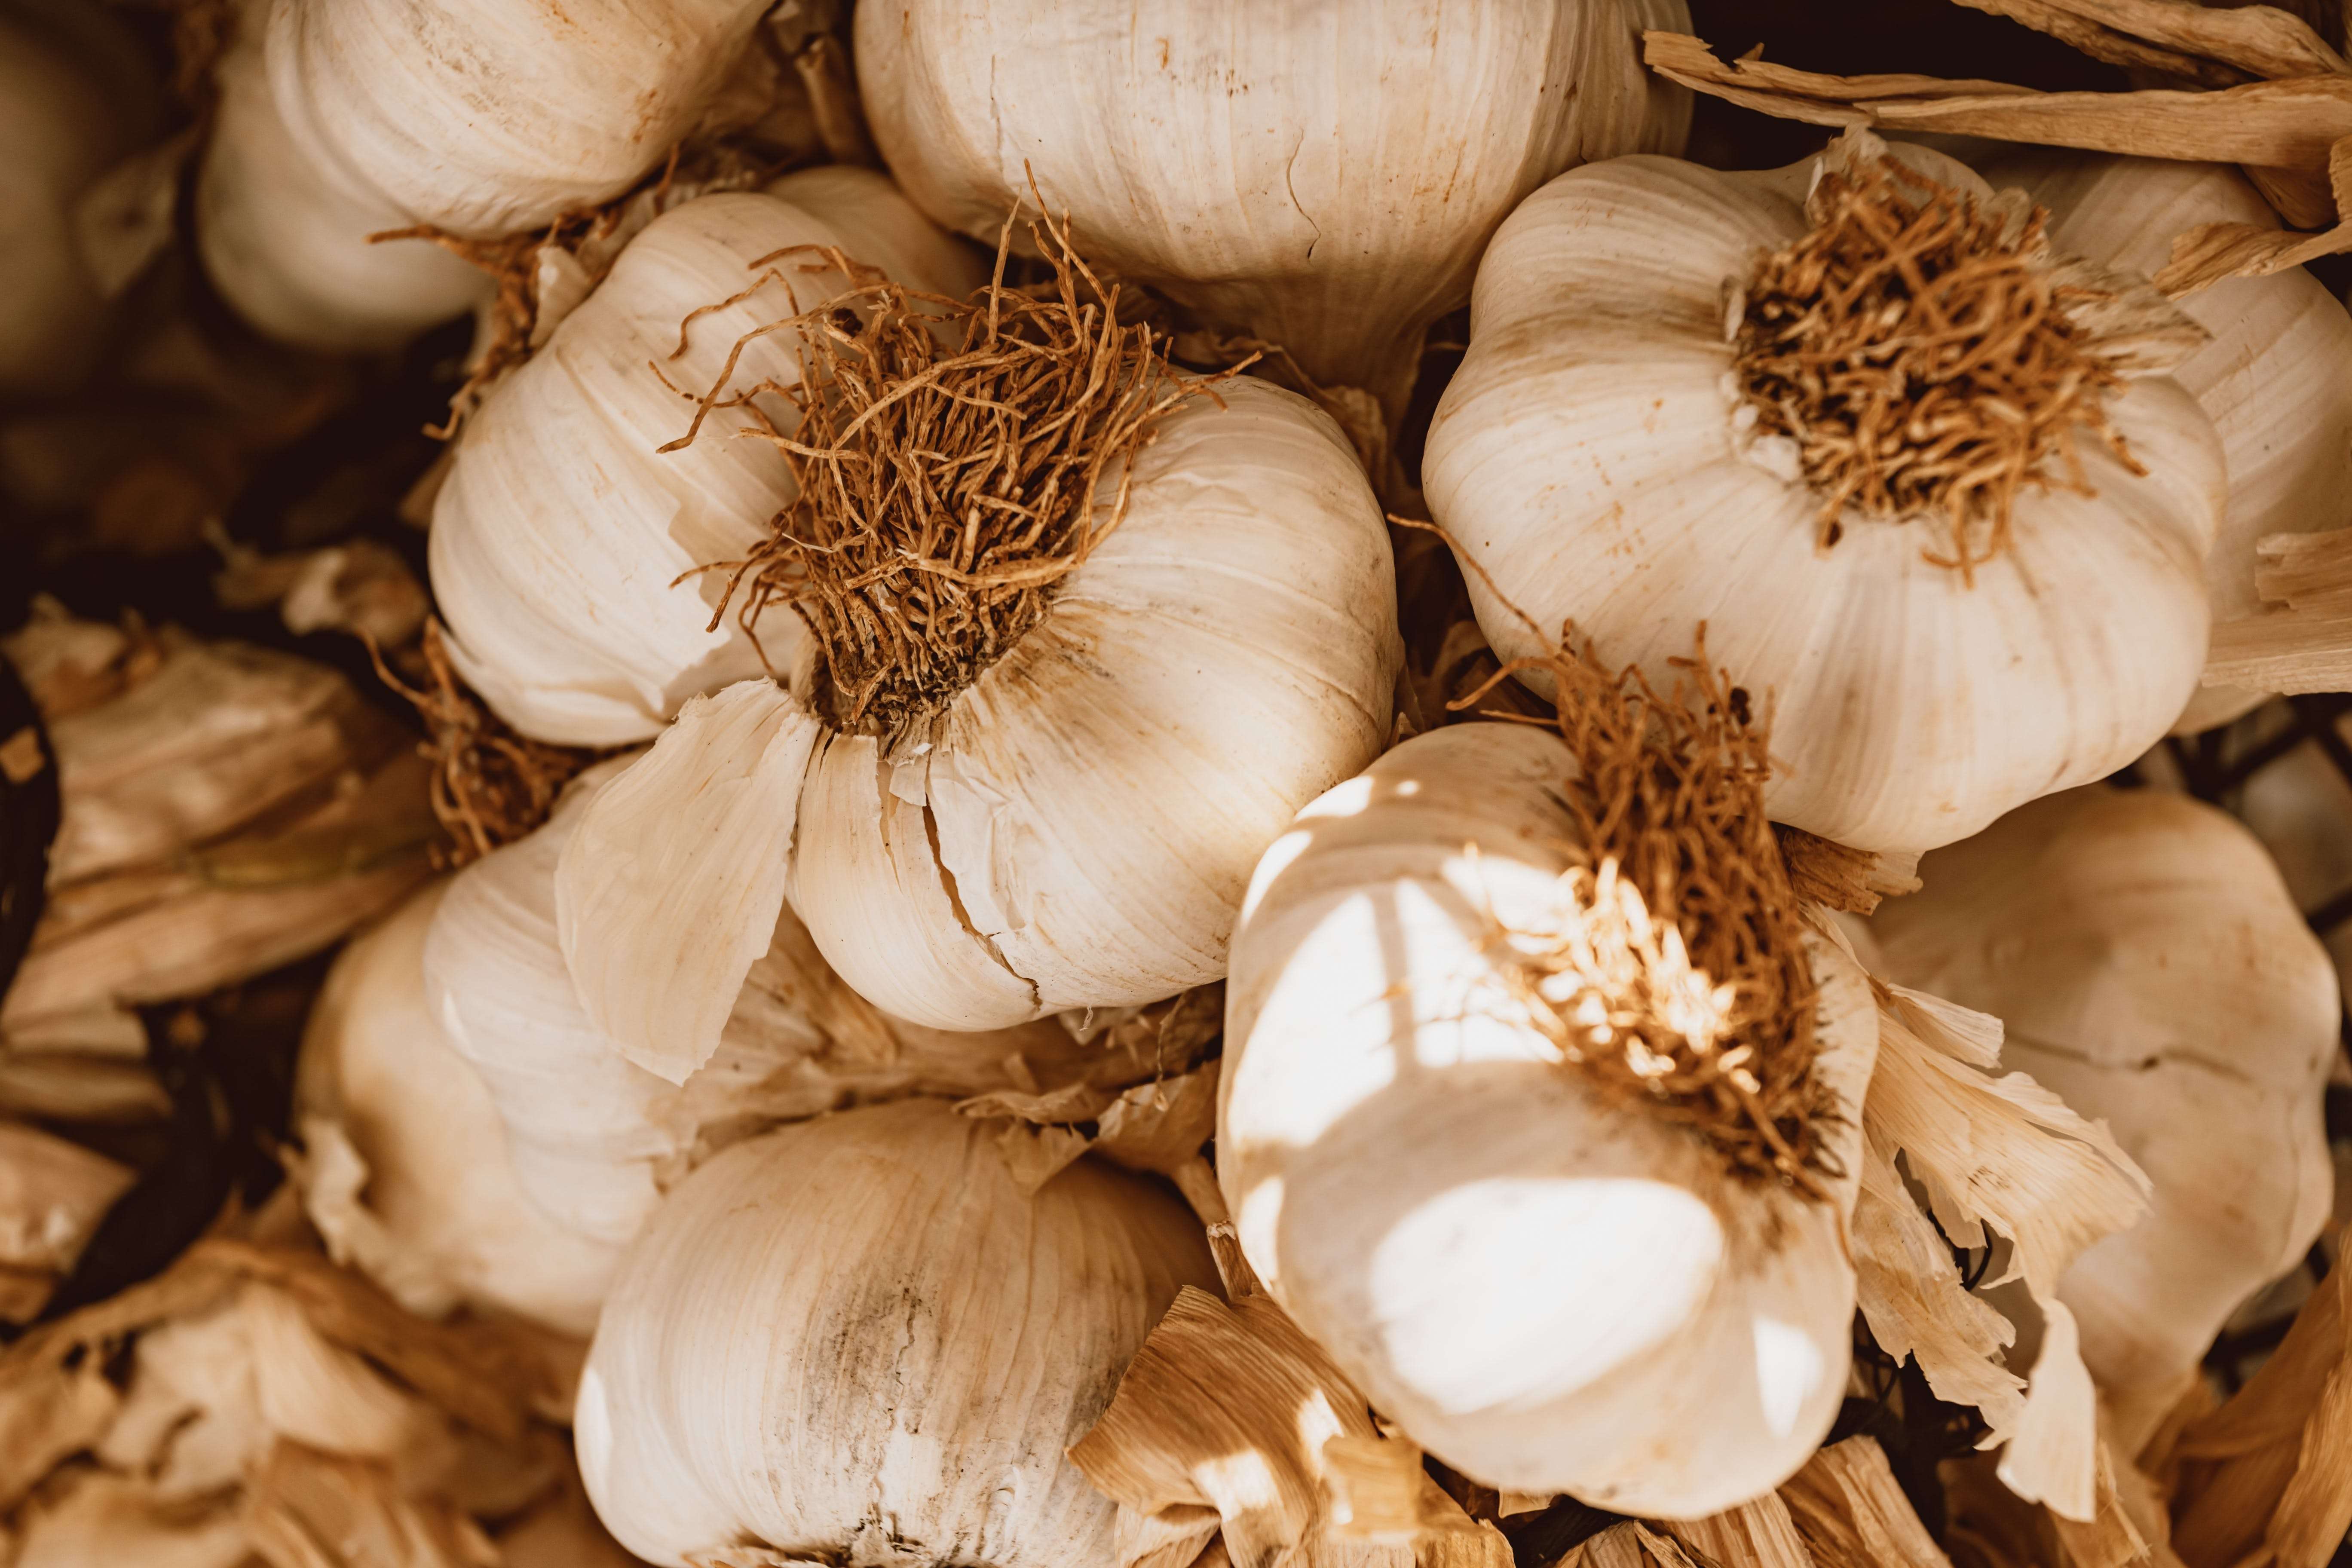 garlic cost decreased due to heavy rain 